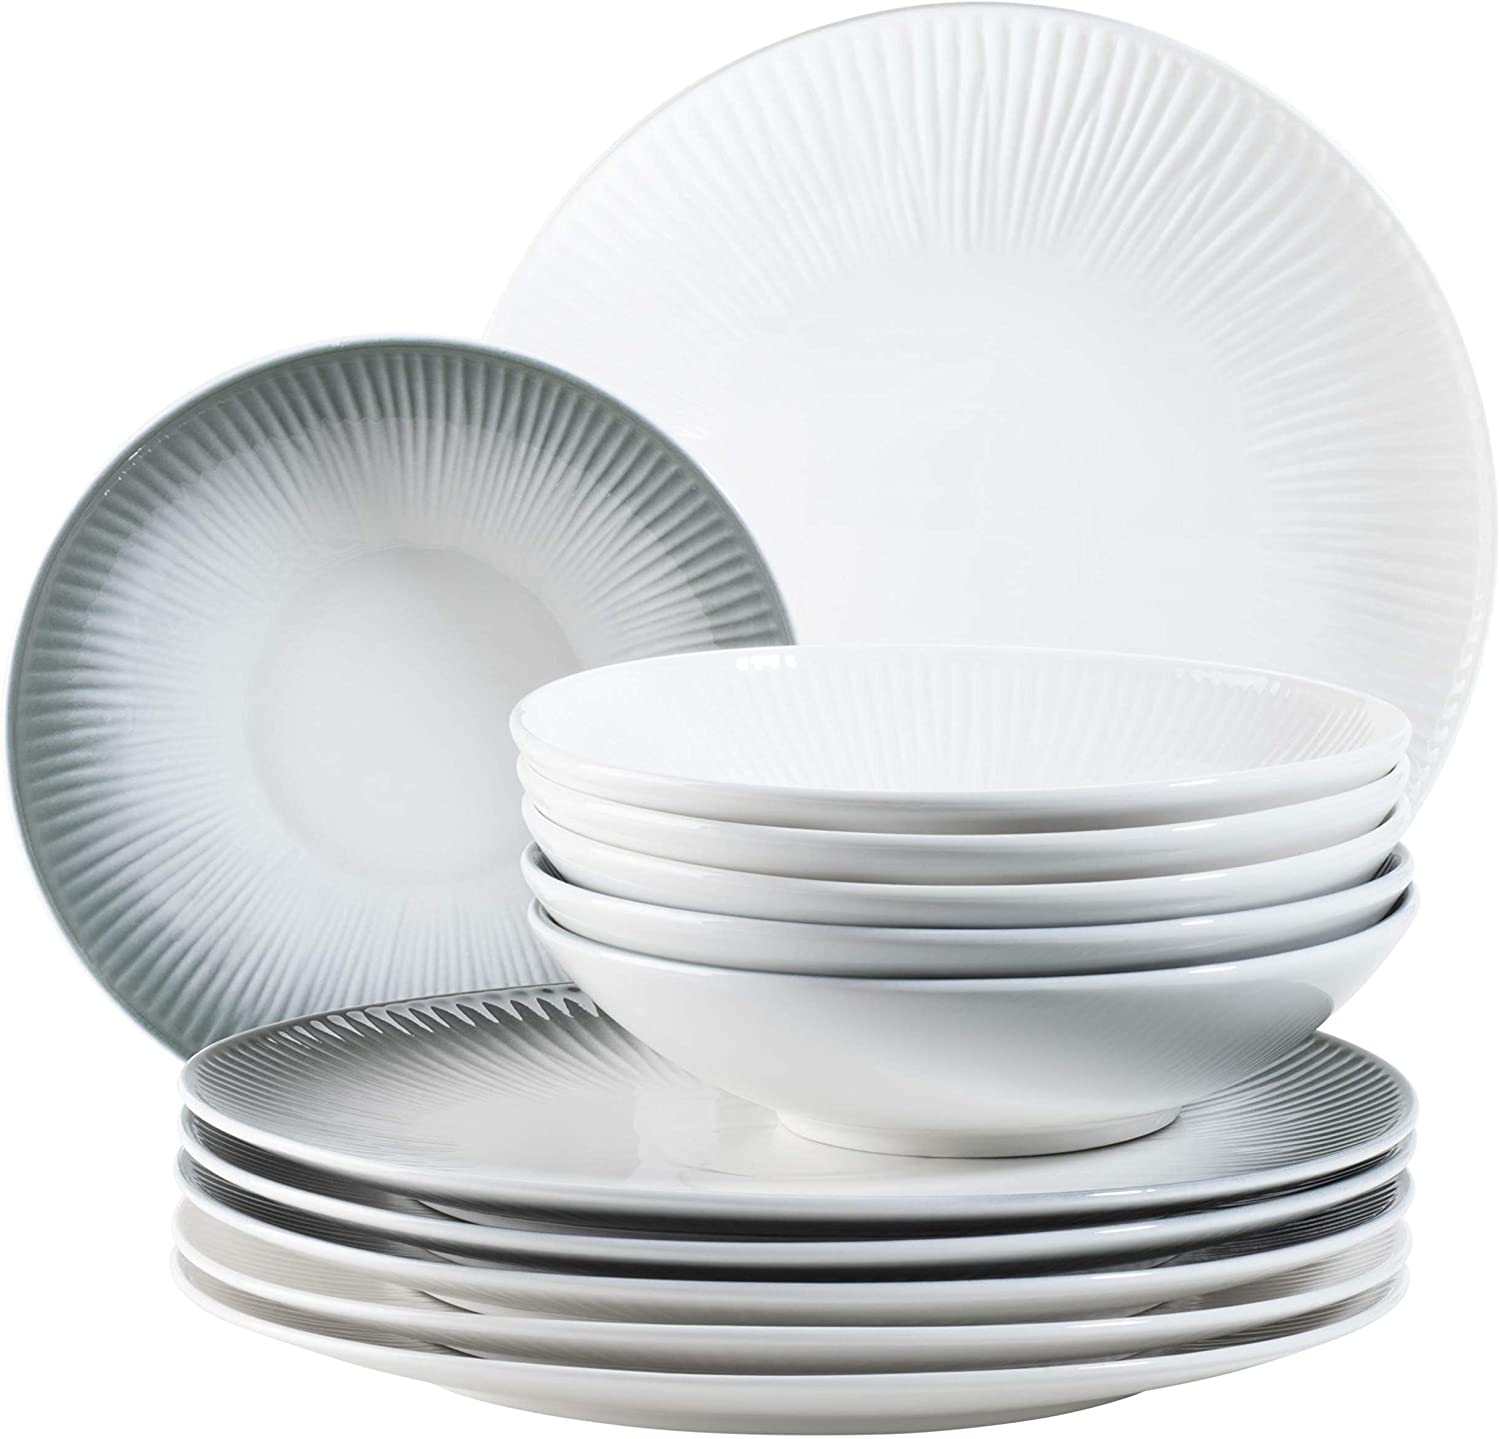 MÄSER Dalia 931538 Dinner Service for 6 People High-Quality Hotel Porcelain 12-Piece Plate Set in Vintage Design Porcelain